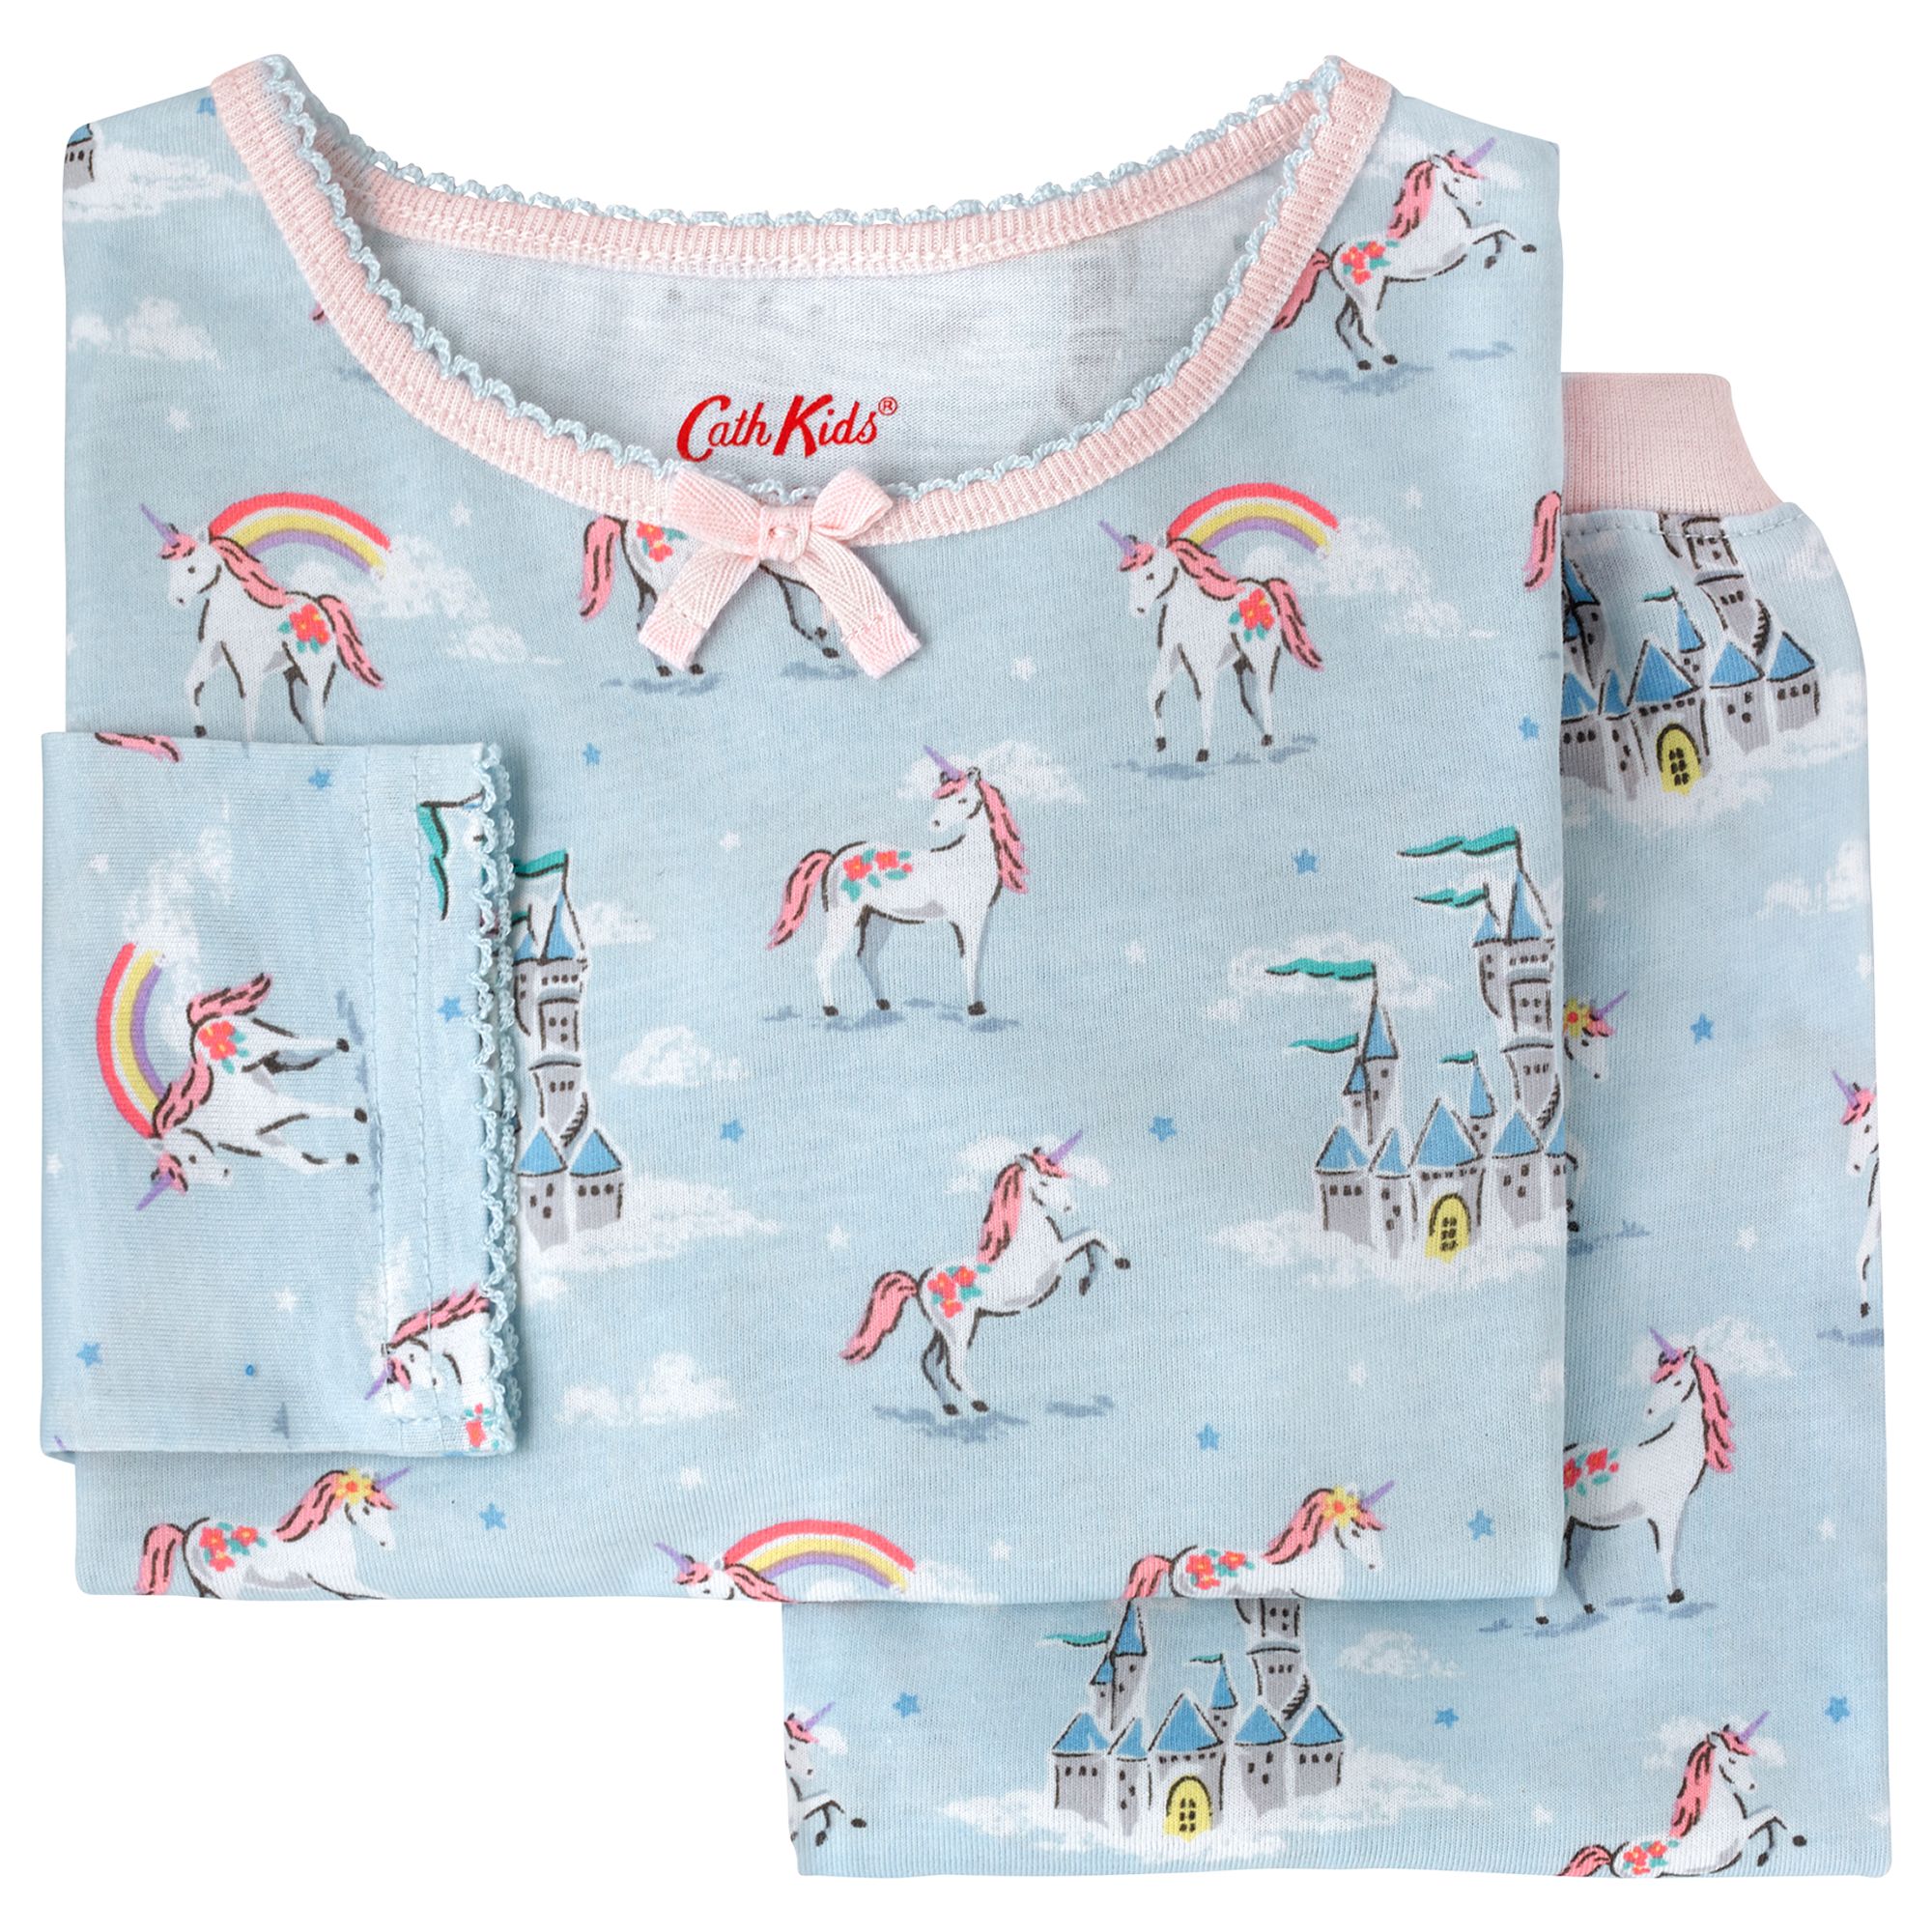 cath kidston childrens pyjamas